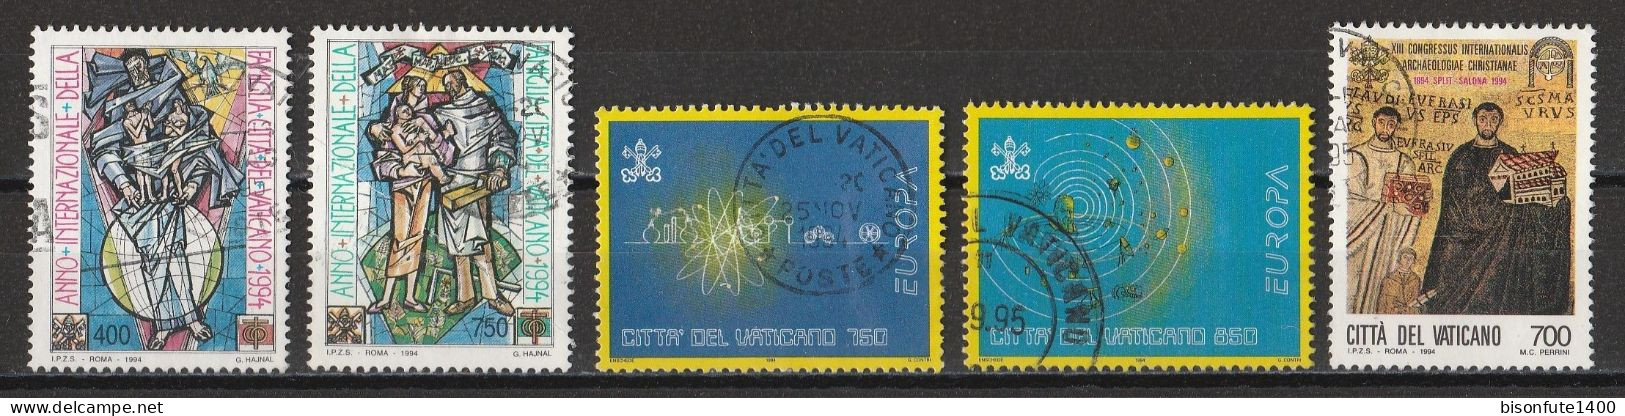 Vatican 1994 : Timbres Yvert & Tellier N° 980 - 981 - 984 - 985 - 987 - 991 - 993 - 995 - 996 Et 997 Se Tenant Et Oblit. - Gebruikt